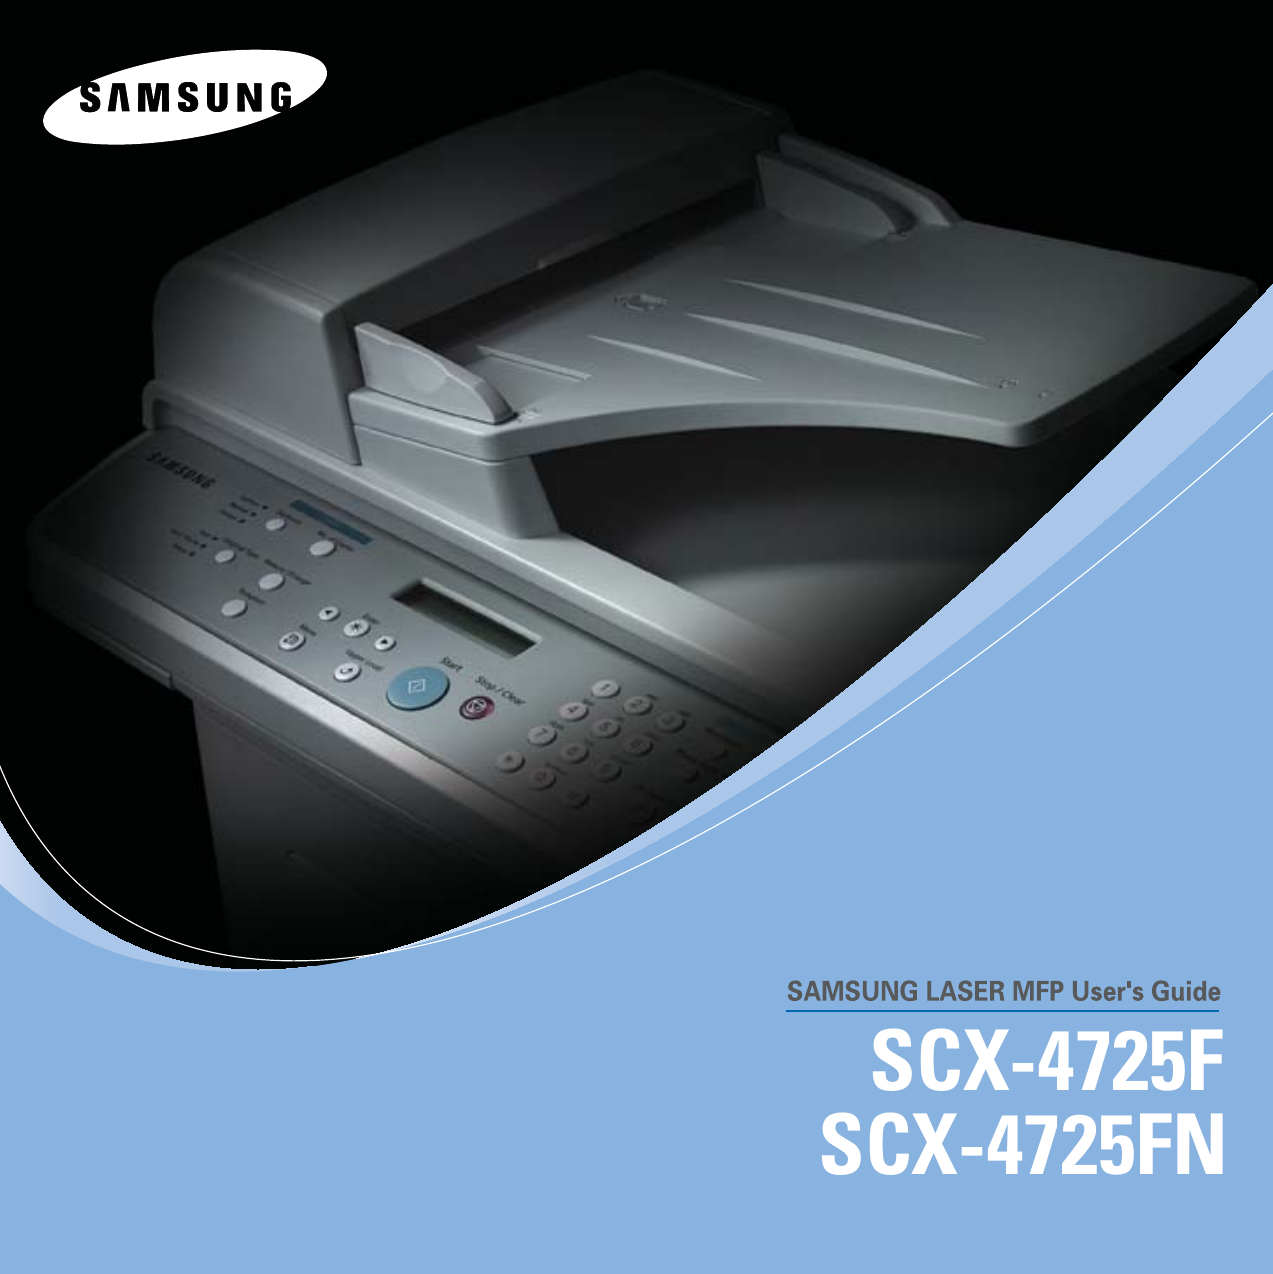 SCX-4725FSCX-4725FN